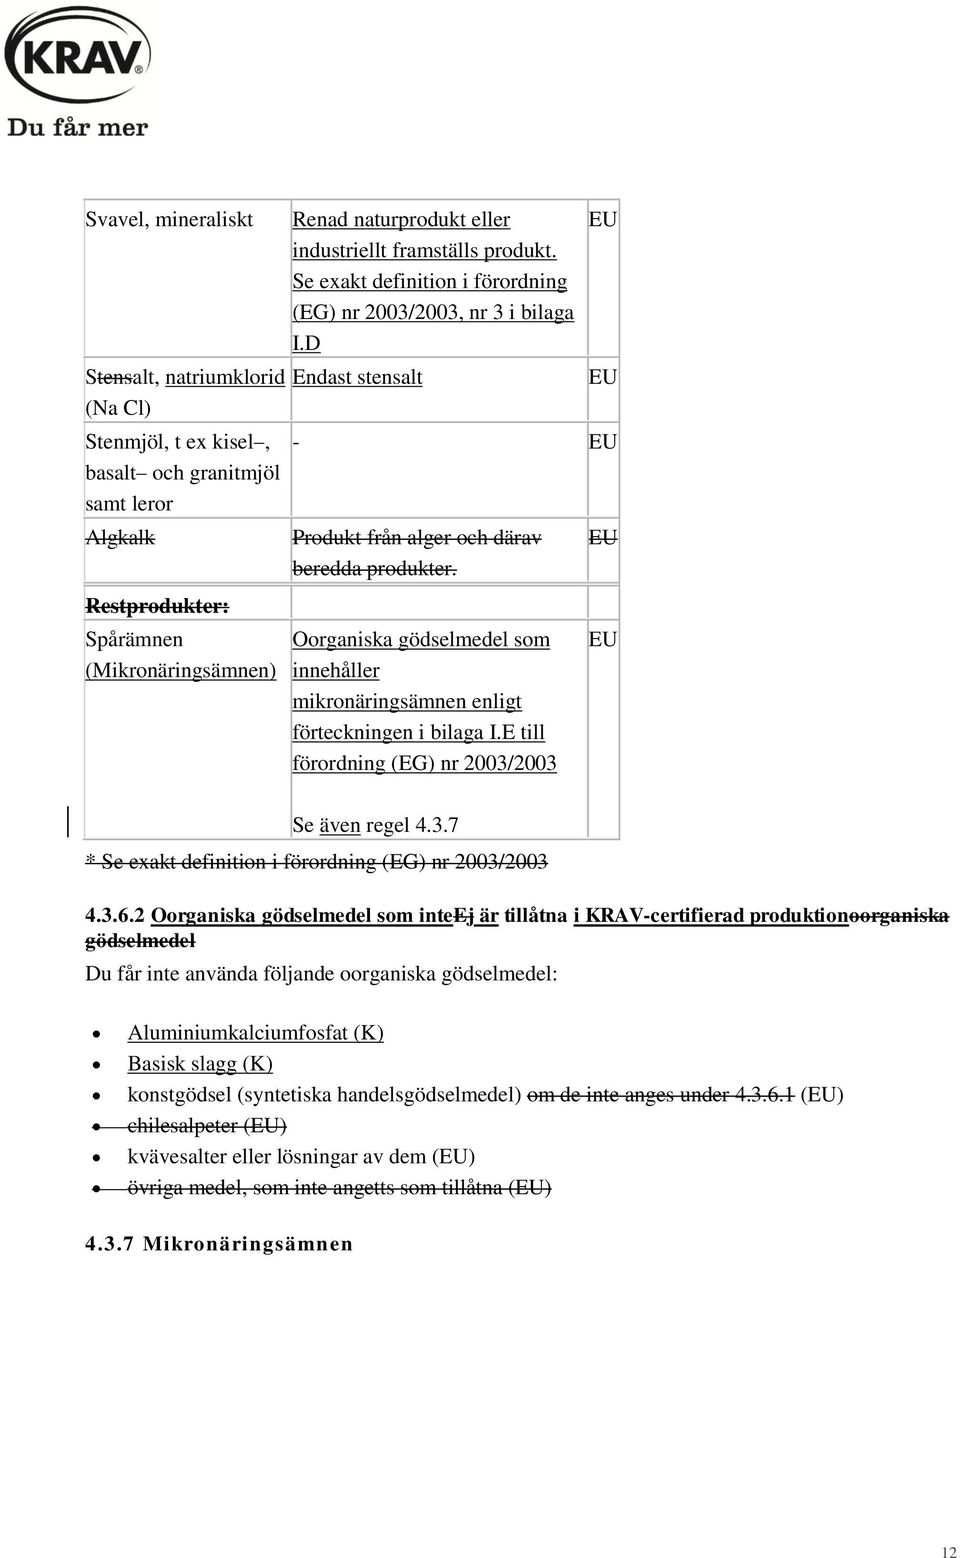 Spårämnen (Mikronäringsämnen) Oorganiska gödselmedel som innehåller mikronäringsämnen enligt förteckningen i bilaga I.E till förordning (EG) nr 2003/